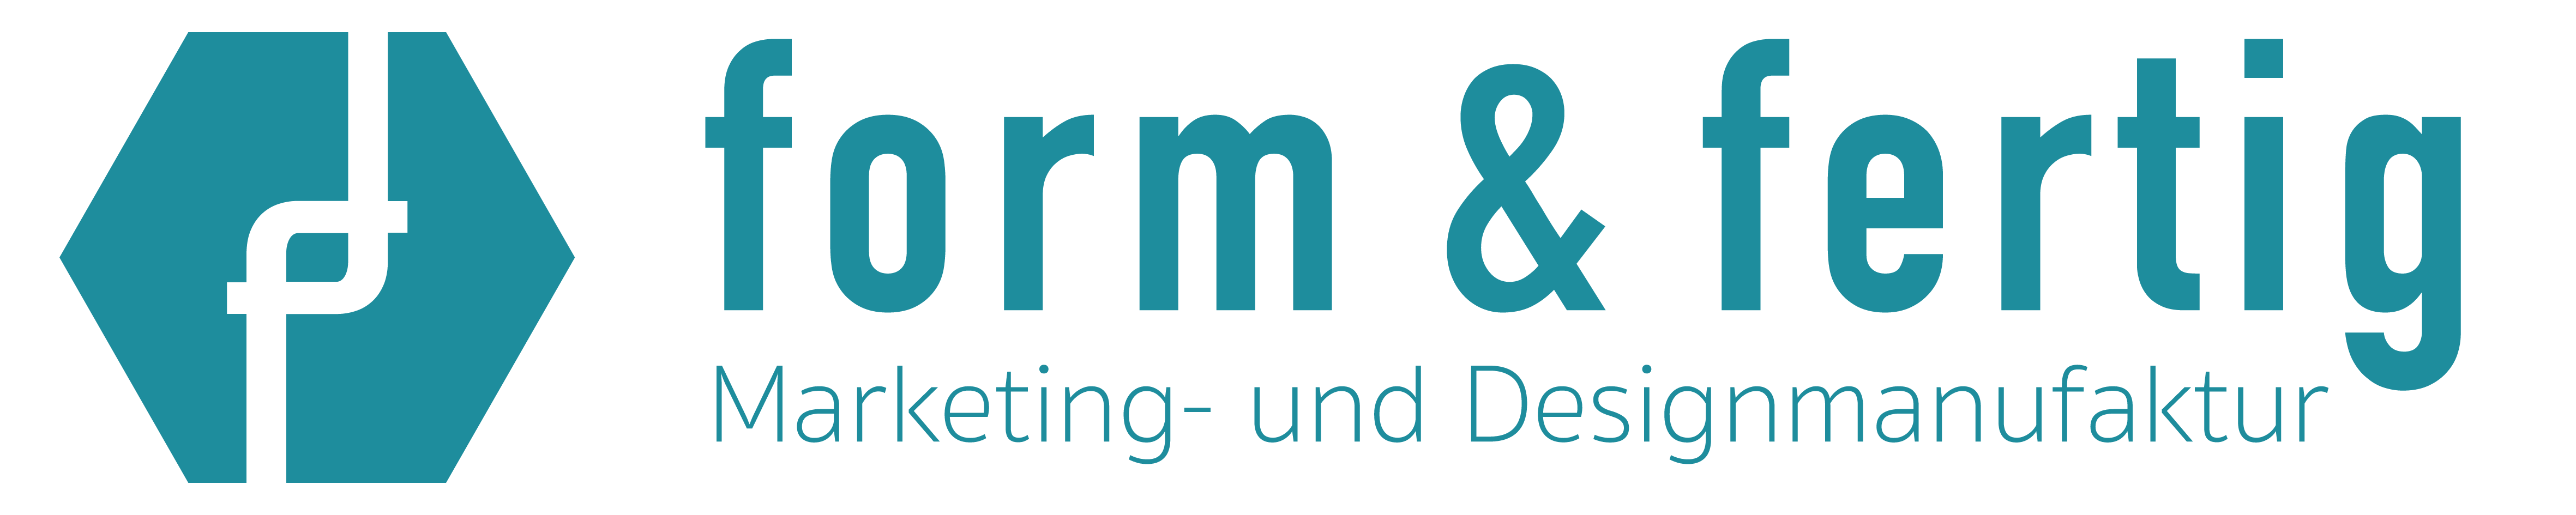 form & fertig GmbH